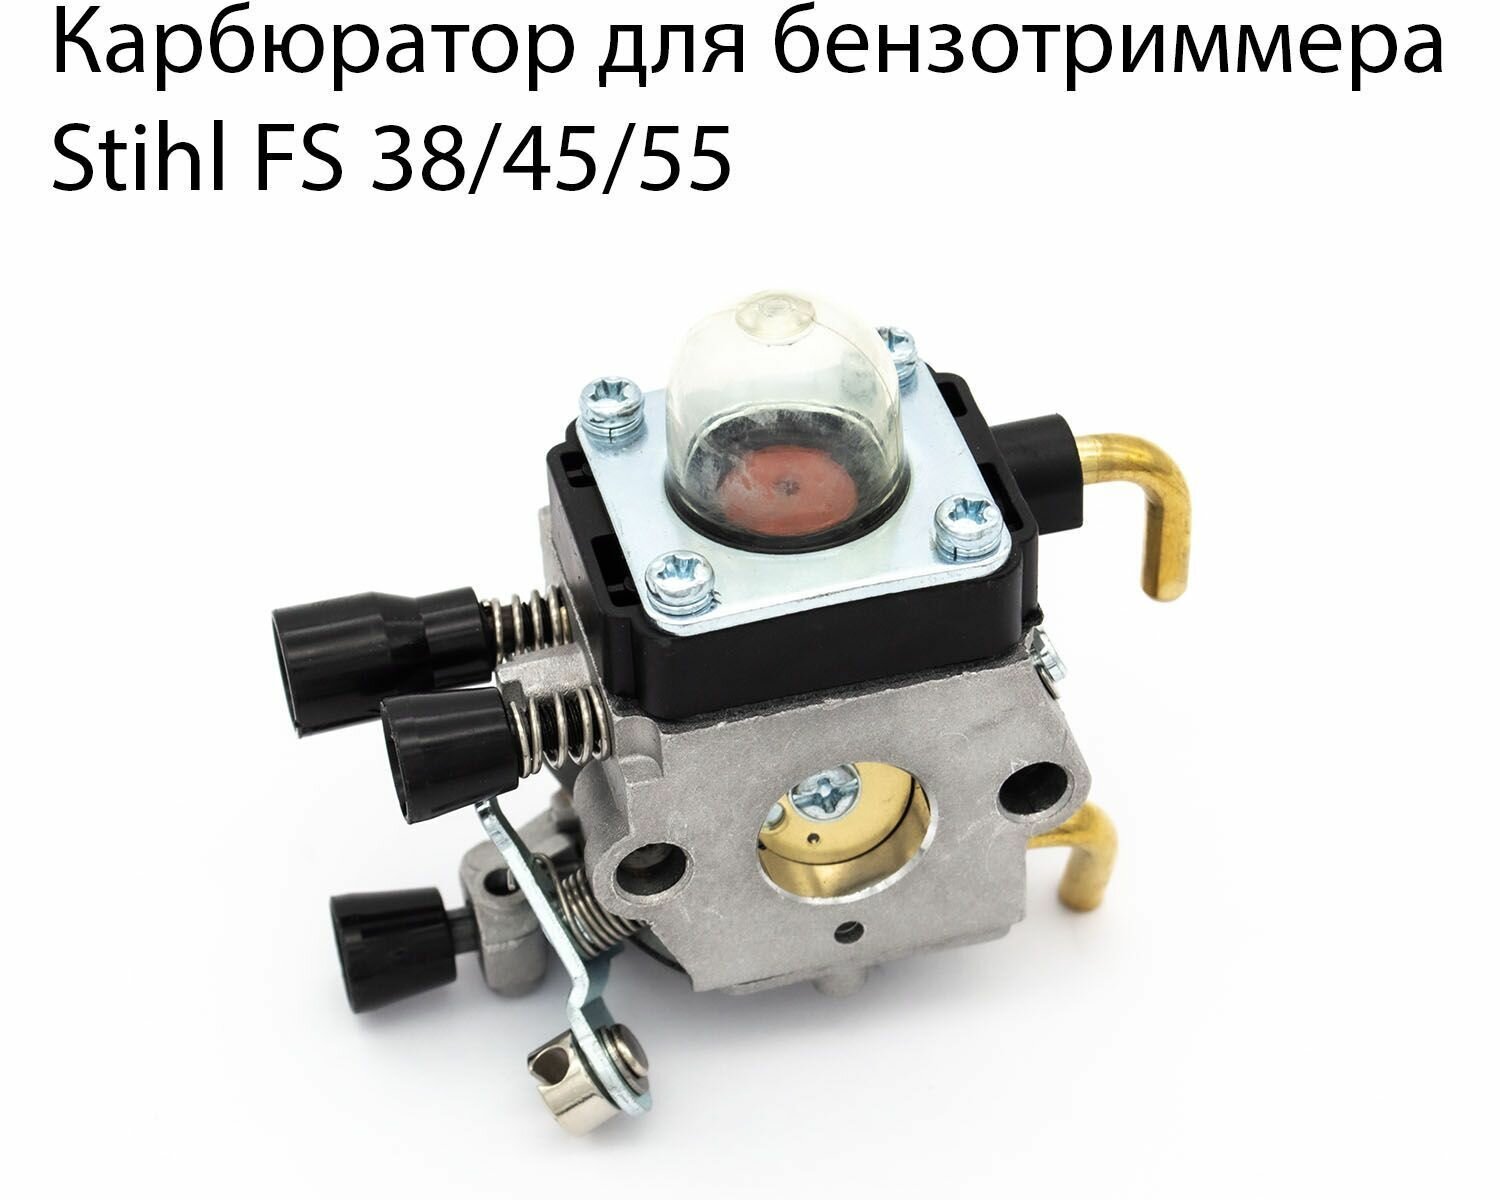 Карбюратор для бензотриммера FS 38/45/55